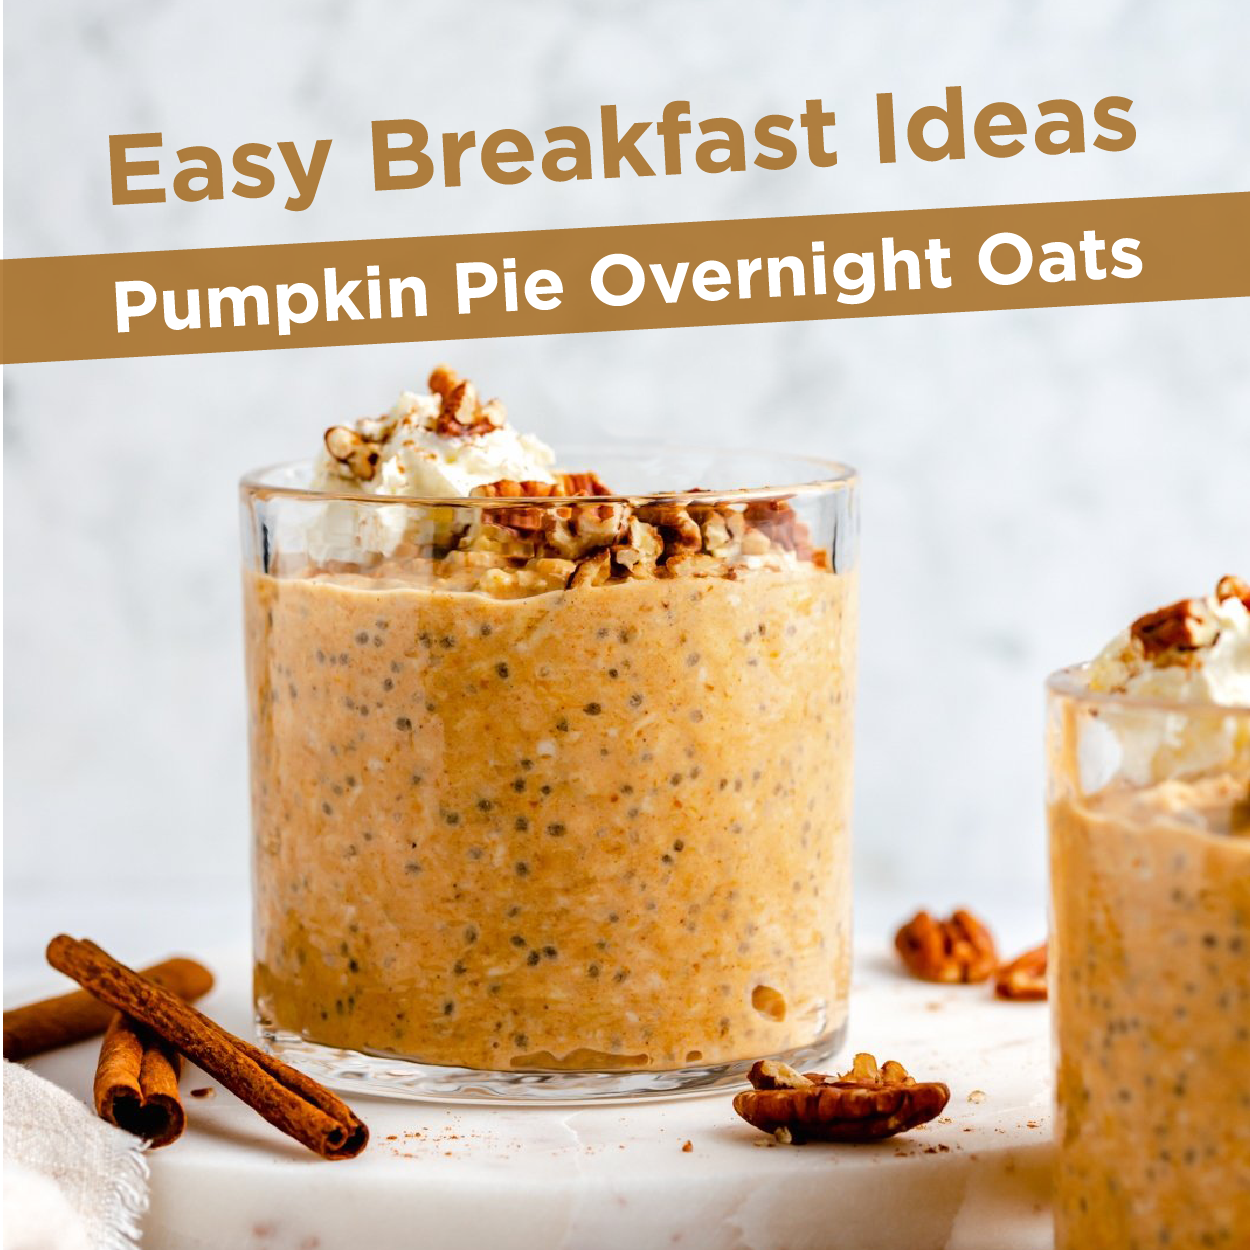 Easy Breakfast Ideas - Pumpkin Pie Overnight Oats 